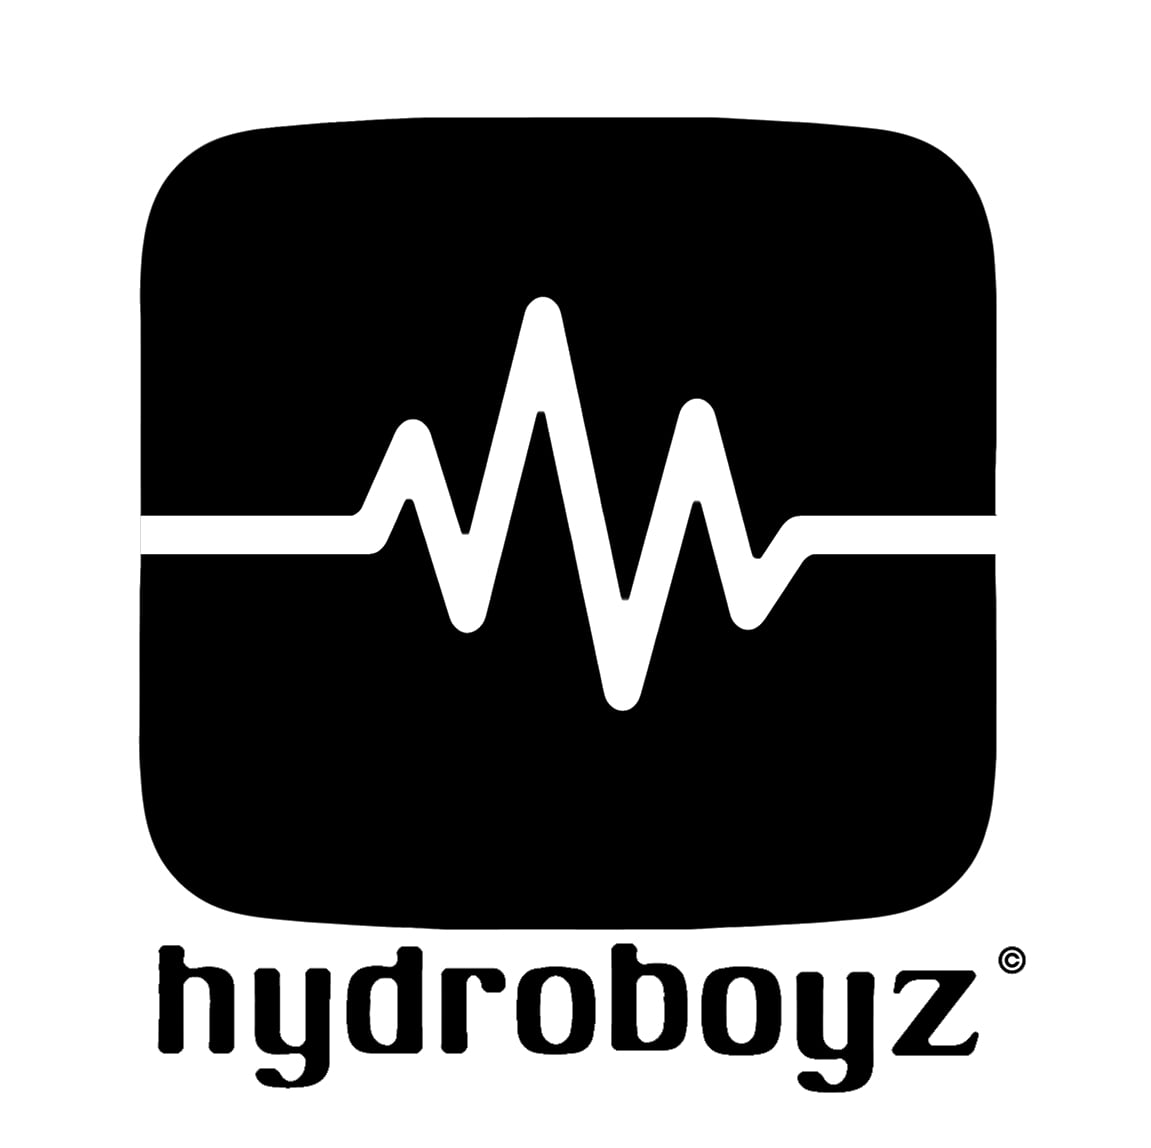 hydro-boyz